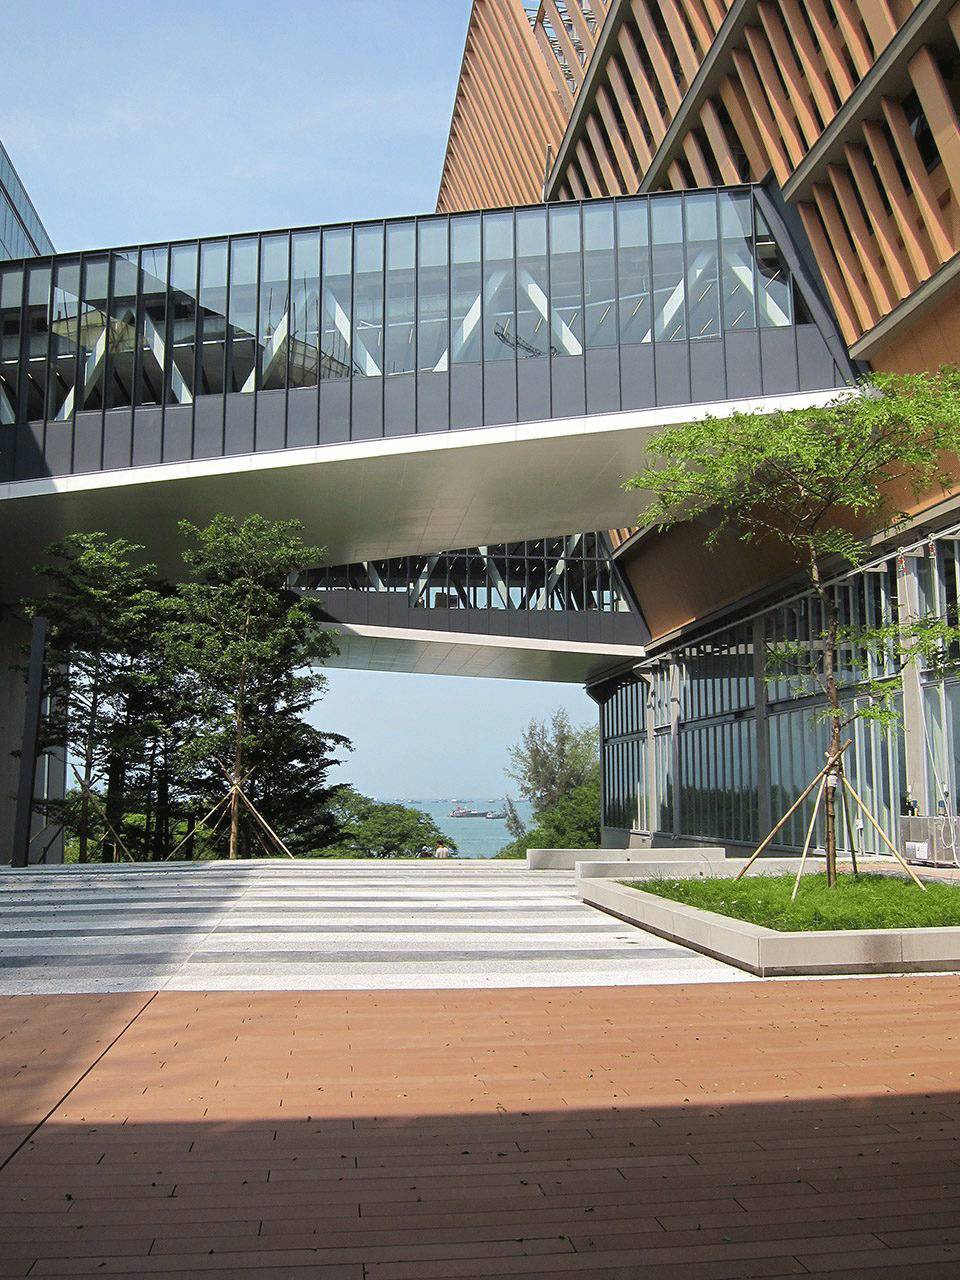 香港珠海学院新校园功能垂直叠加的立体校园